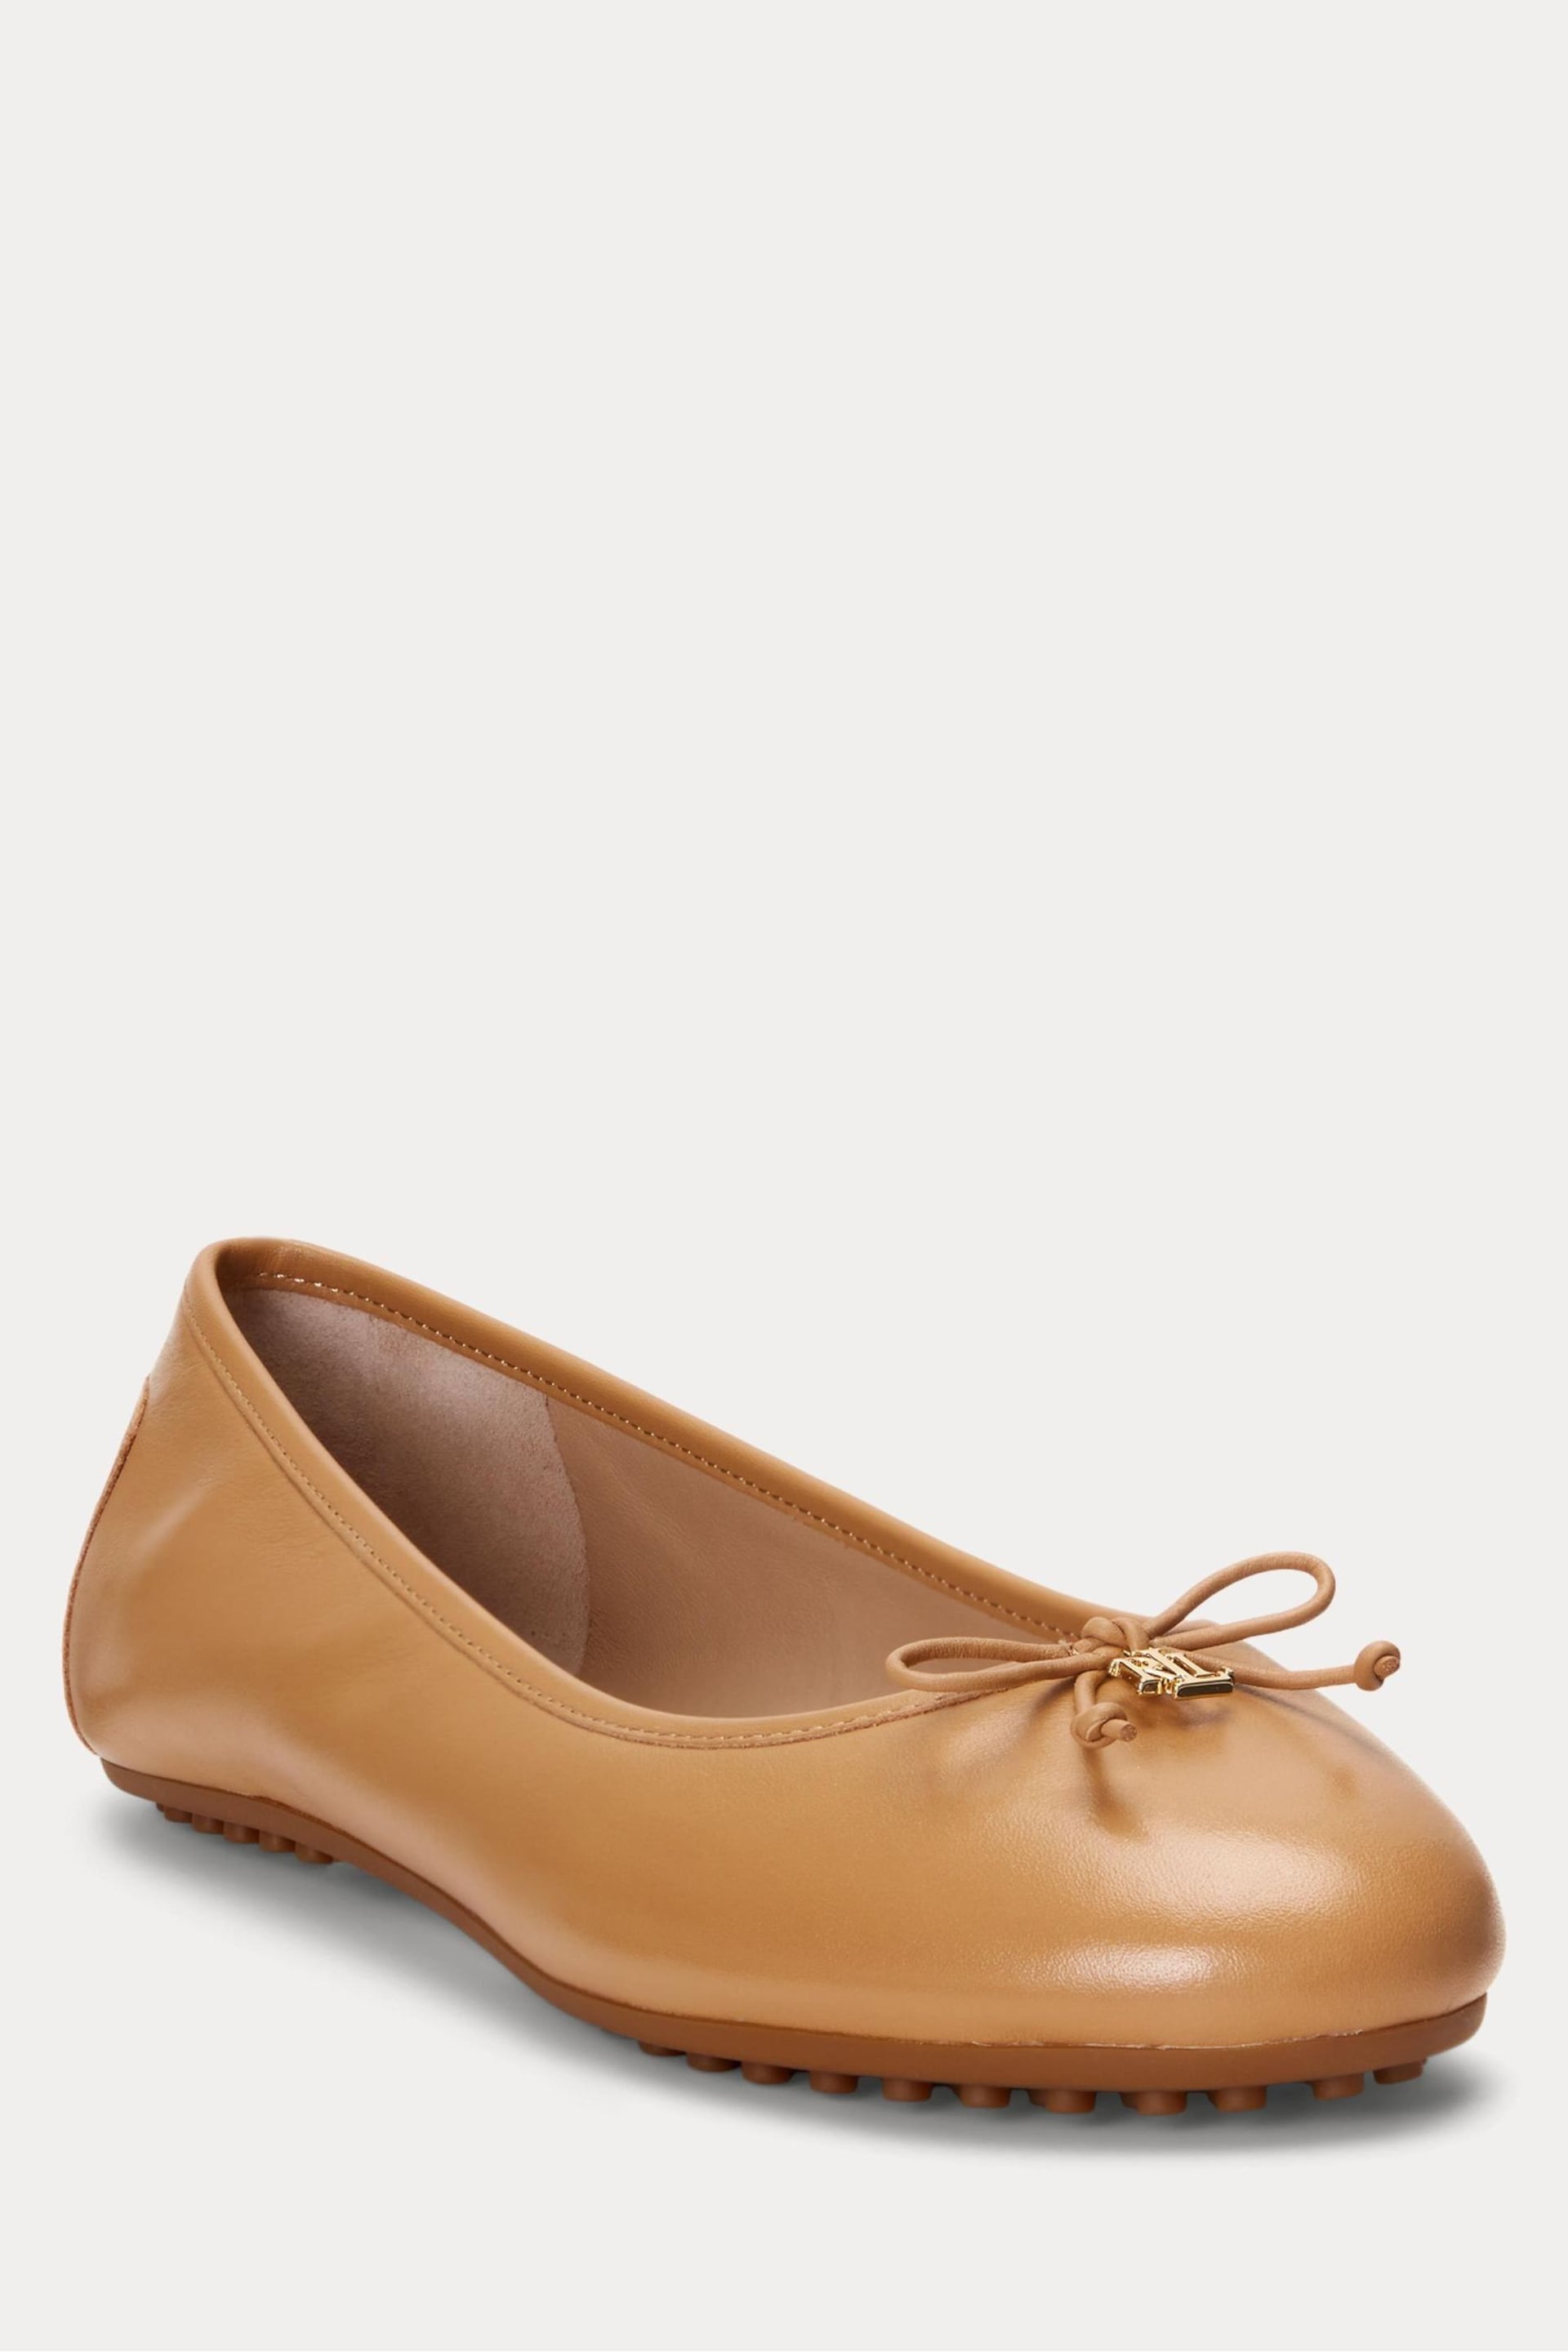 Lauren Ralph Lauren Jayna Nappa Leather Ballet Flat Shoes - Image 3 of 4